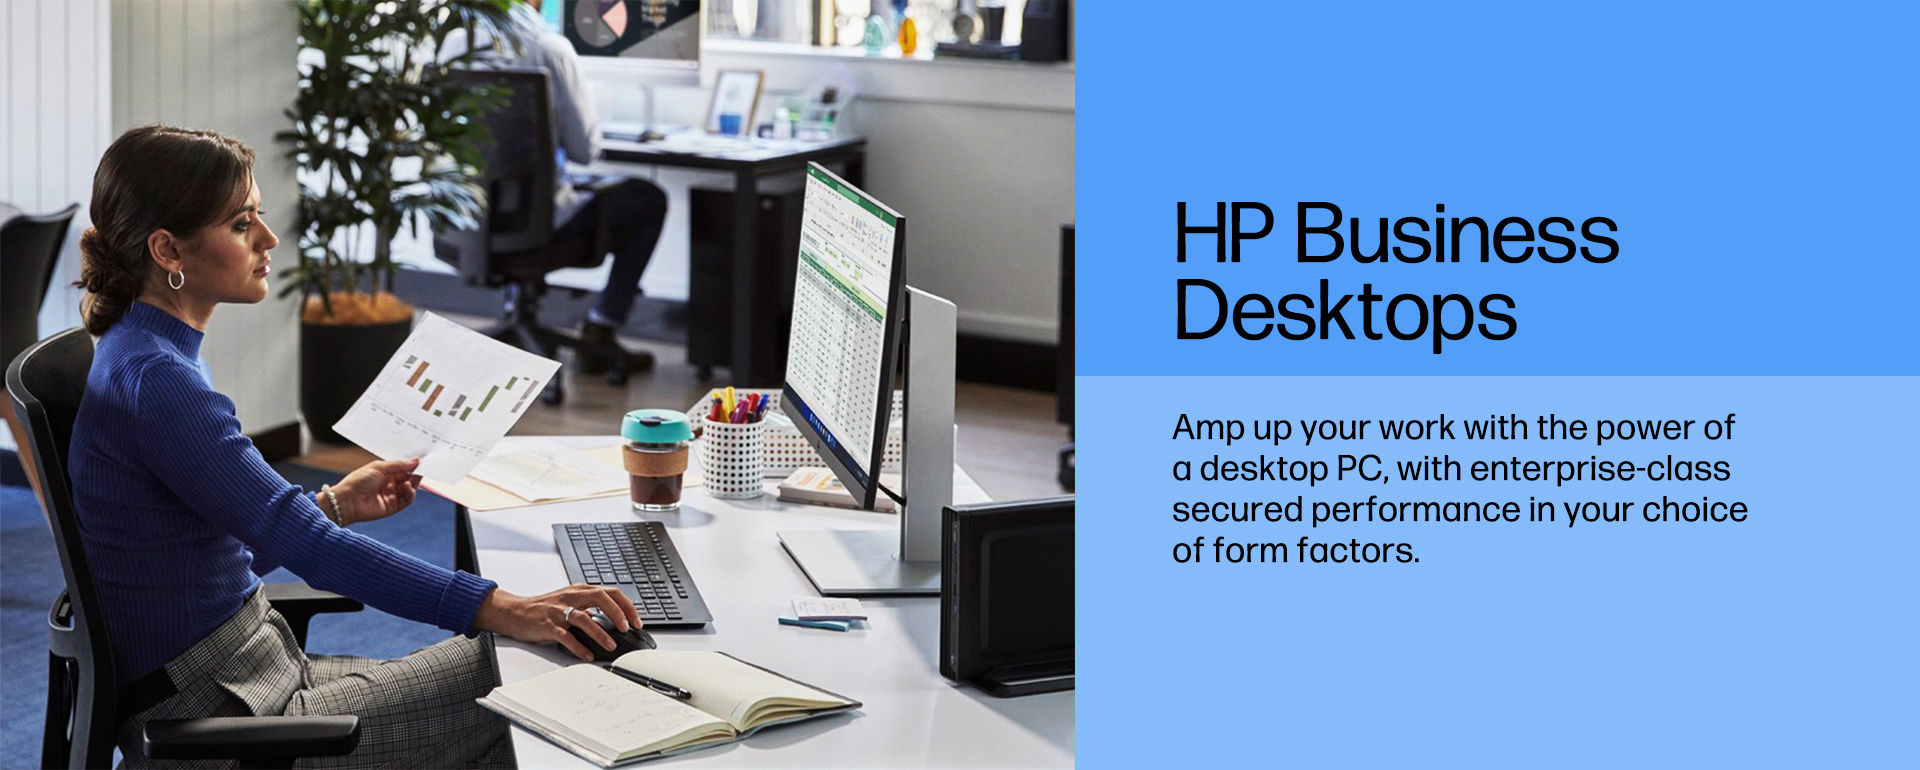 HP Businessdesktops 05.16.banner